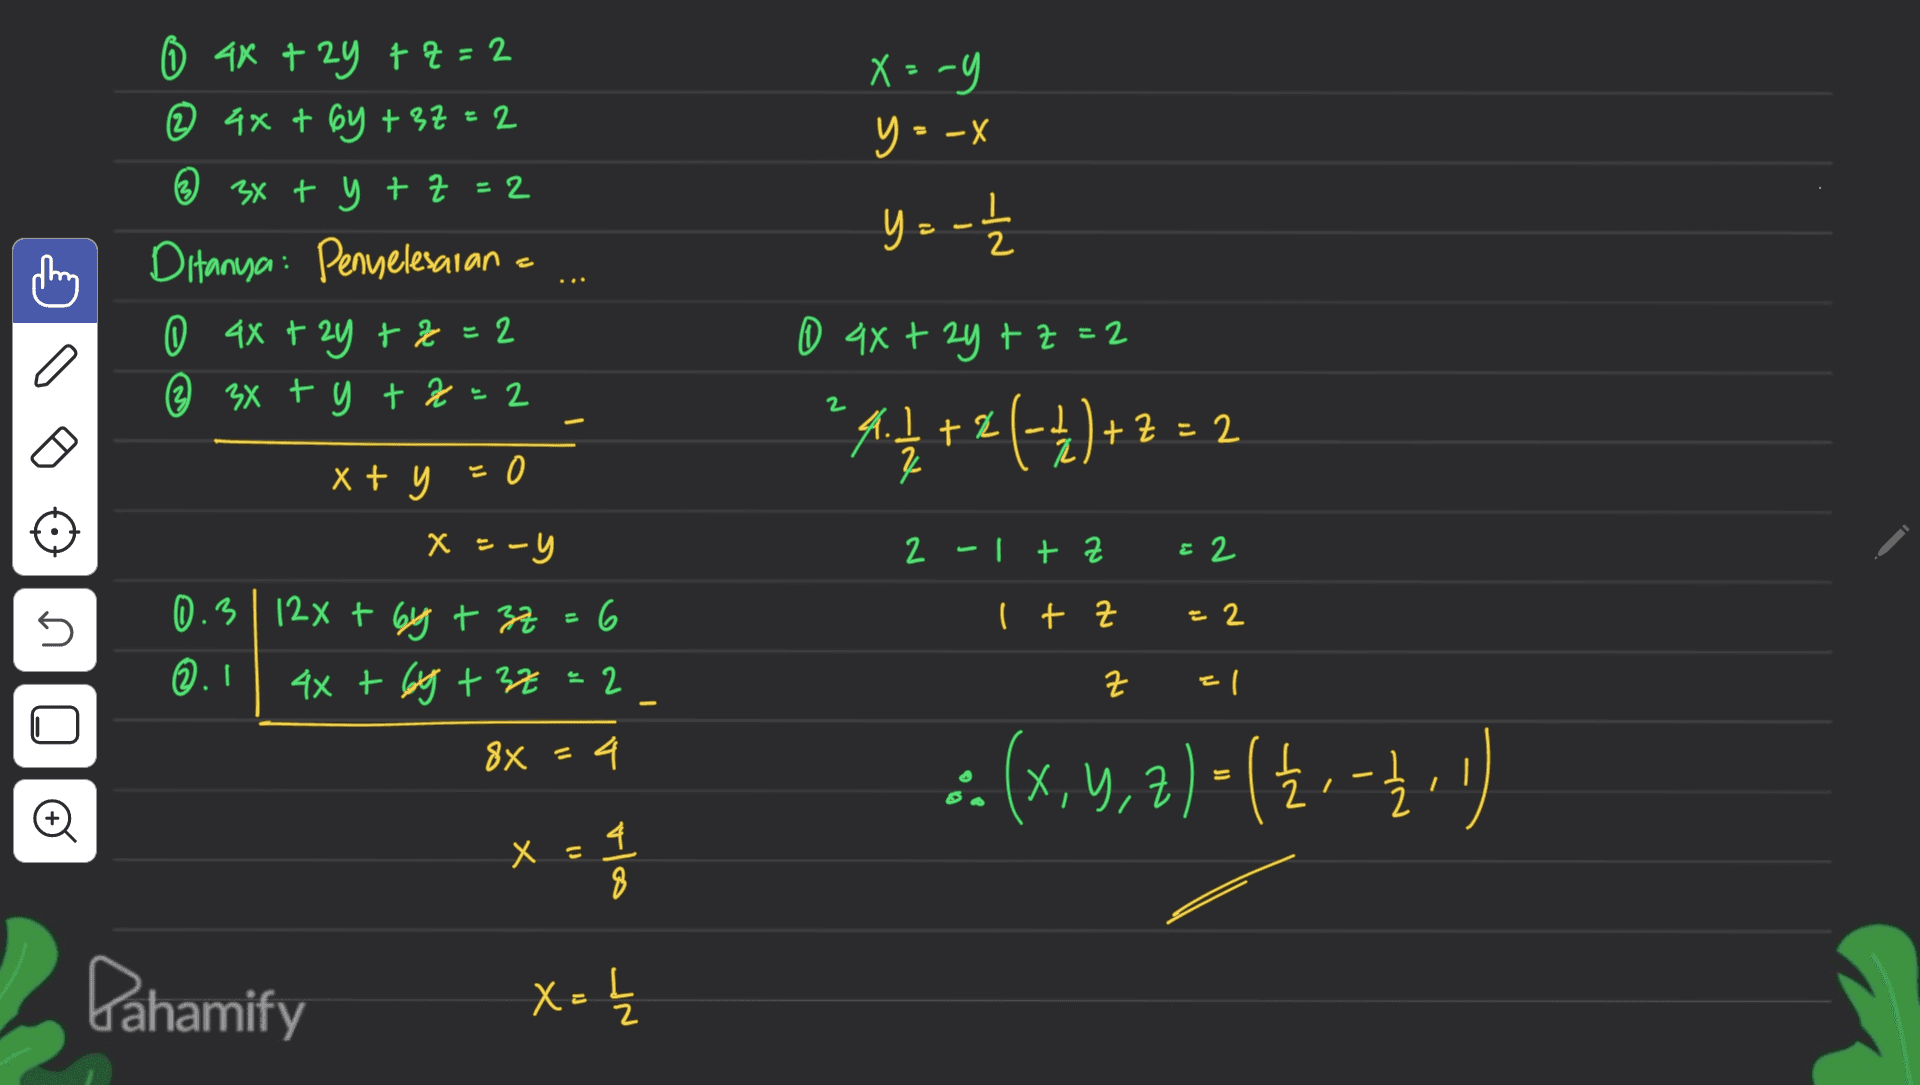 - X=-9 E - y = -x i 0 4x + 2y + 4 = 2 @ 4x + 6y +37=2 ② 3x + y + z =2 Ditanya: Penyelesaian 0 4x + 2y +2=2 ② 3x + y + z 2 y = -1 . a 0 4x + 2y + z =2 4+2 (-1)+2:2 4.1 +2 ) z 2 1+ = 2 xt x + y = 0 EO x = -y 2 -lt z & 2 5 It z = 2 0.3 | 124 + 6y + 3z 6 ©.1 4x + 6y + 32 2 &X=4 2 근 2 디 : (x, y, z) = (Ž - 12 X y, € ) ㅋ 2 © X Х 4 ola Dahamify X = I 